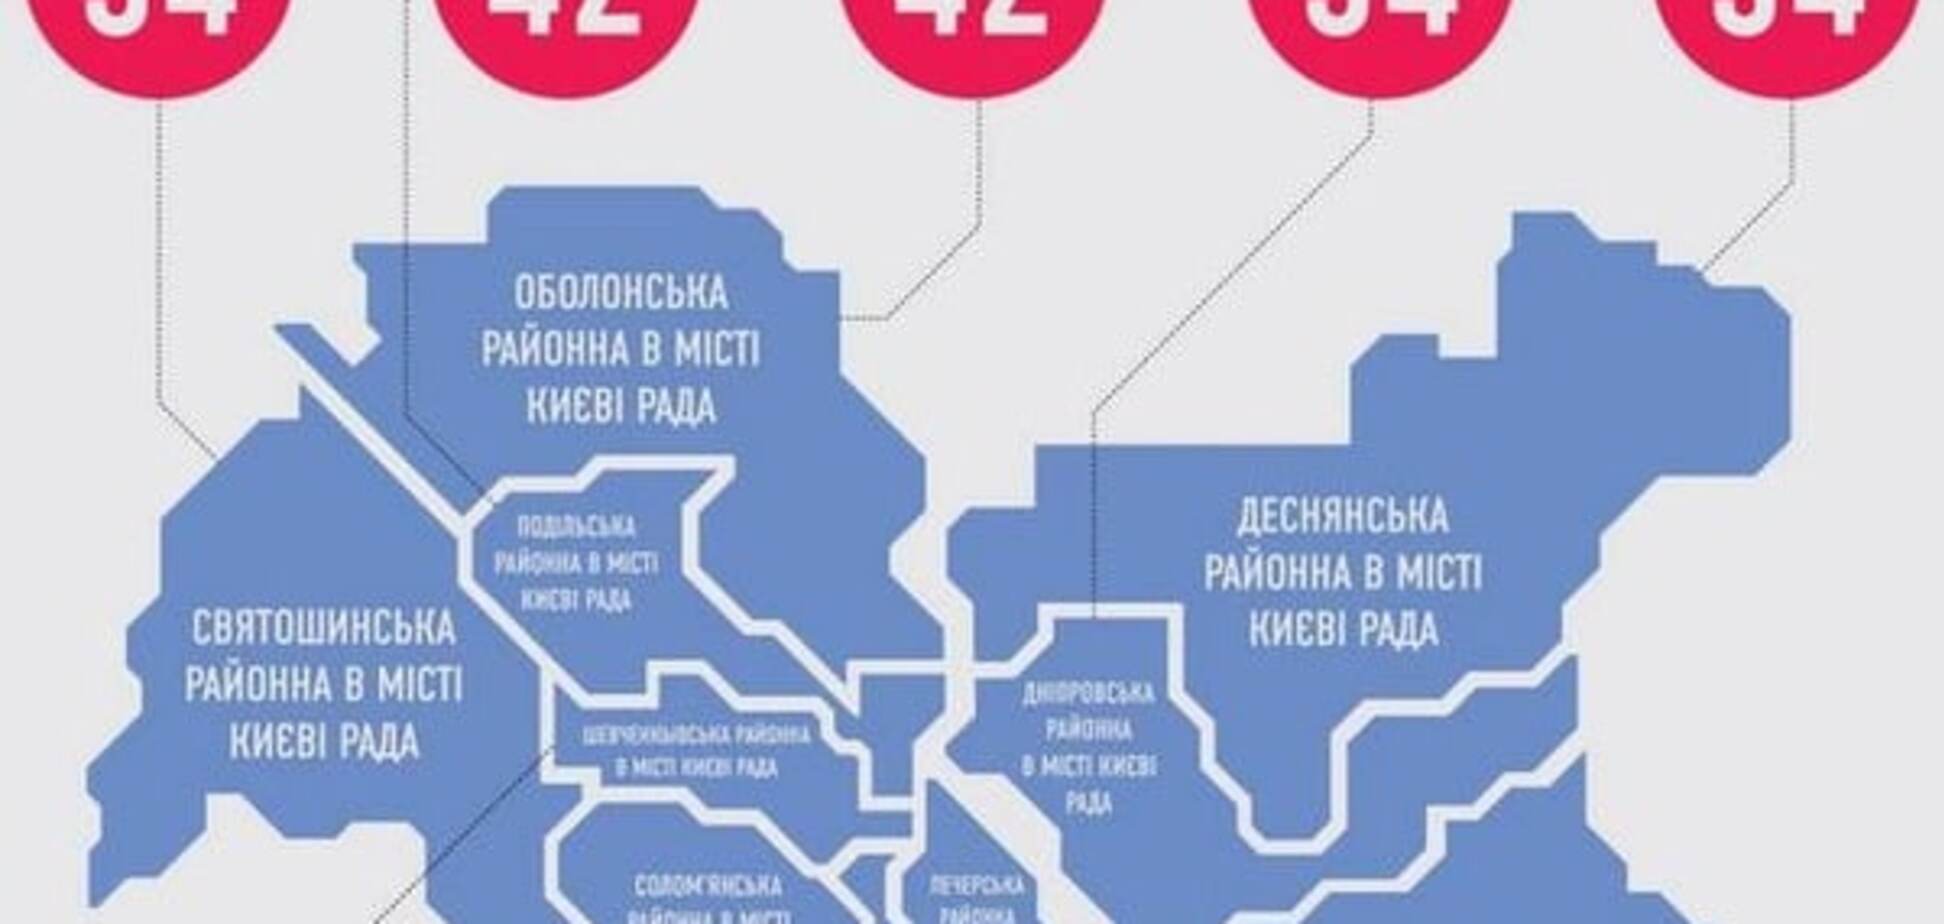 При выборах в райсоветы Киев получит до 474 новых депутатов - КИУ